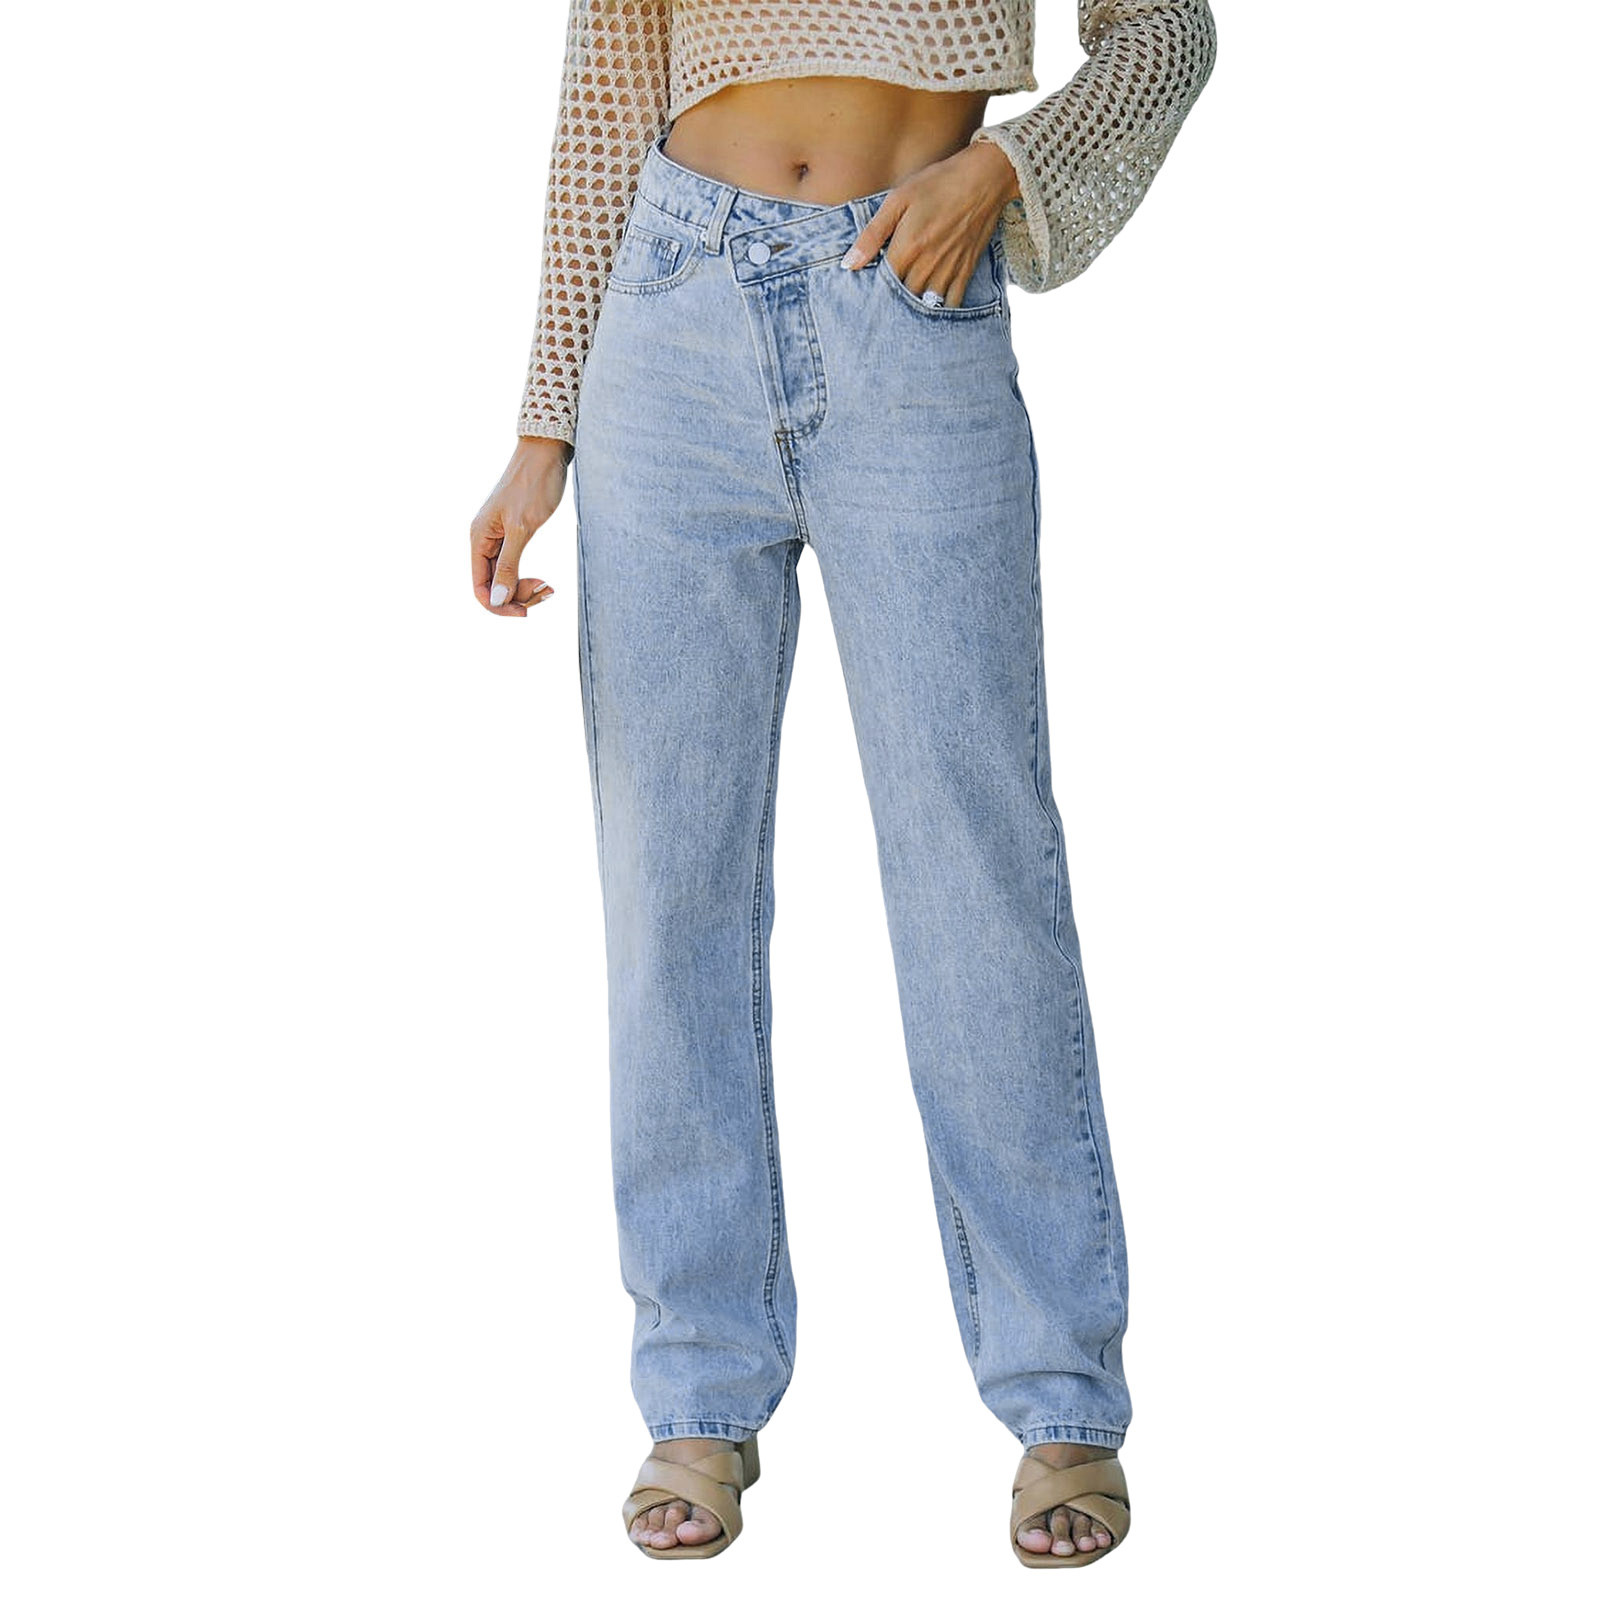 Frehsky jeans for women women irregular waist casual high waisted straight leg bottom jeans pants straight leg jeans for women light blue, Women's,